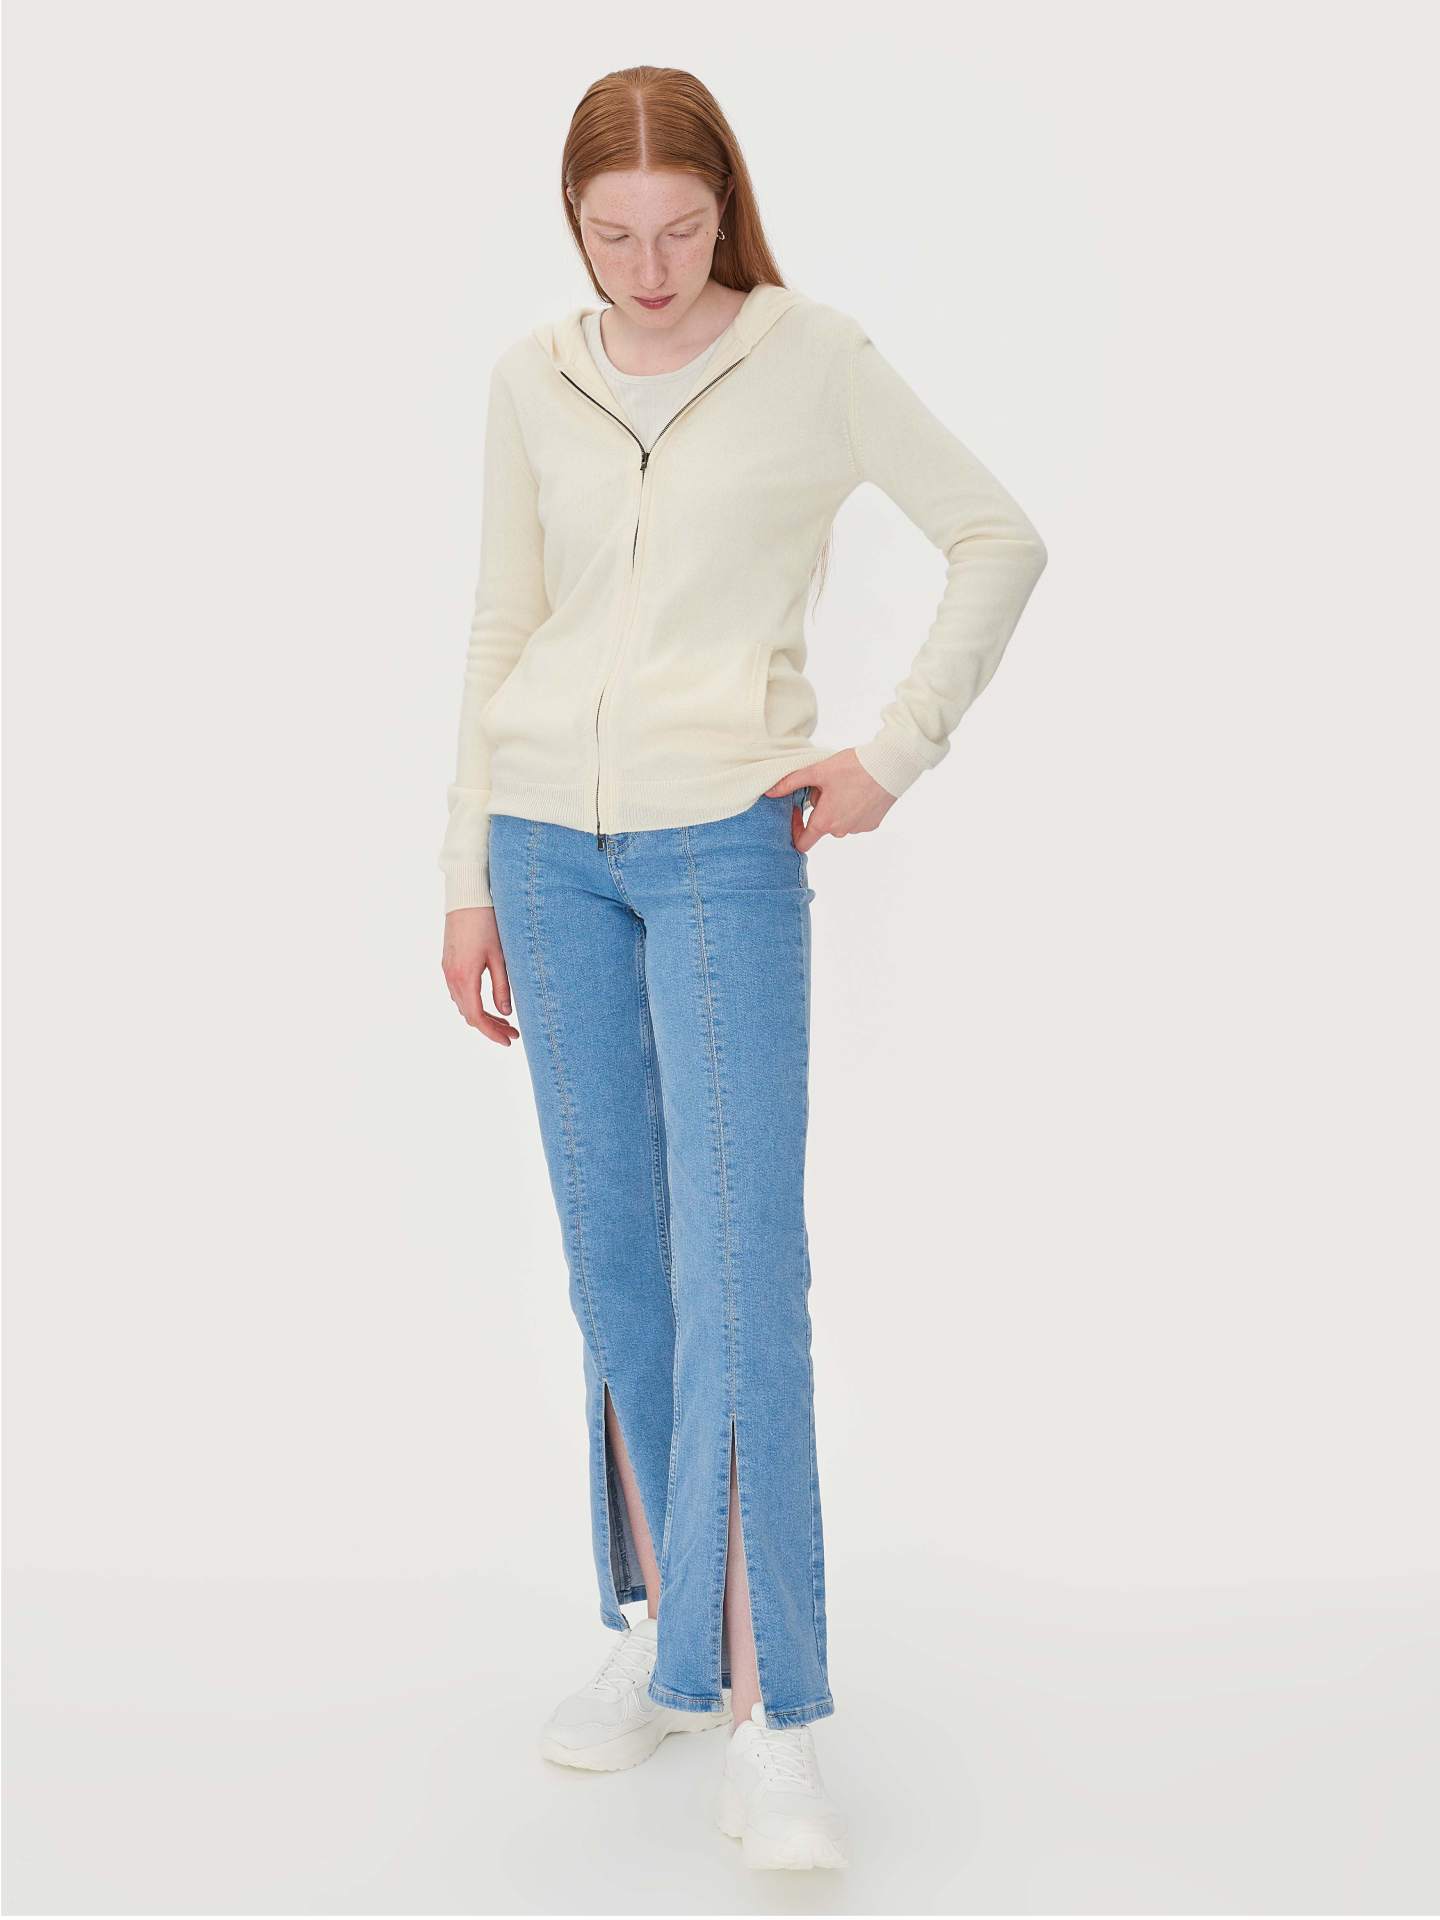 Damen Kaschmir Kapuzen-Strickjacke Mit Reißverschluss Weiß - Gobi Cashmere